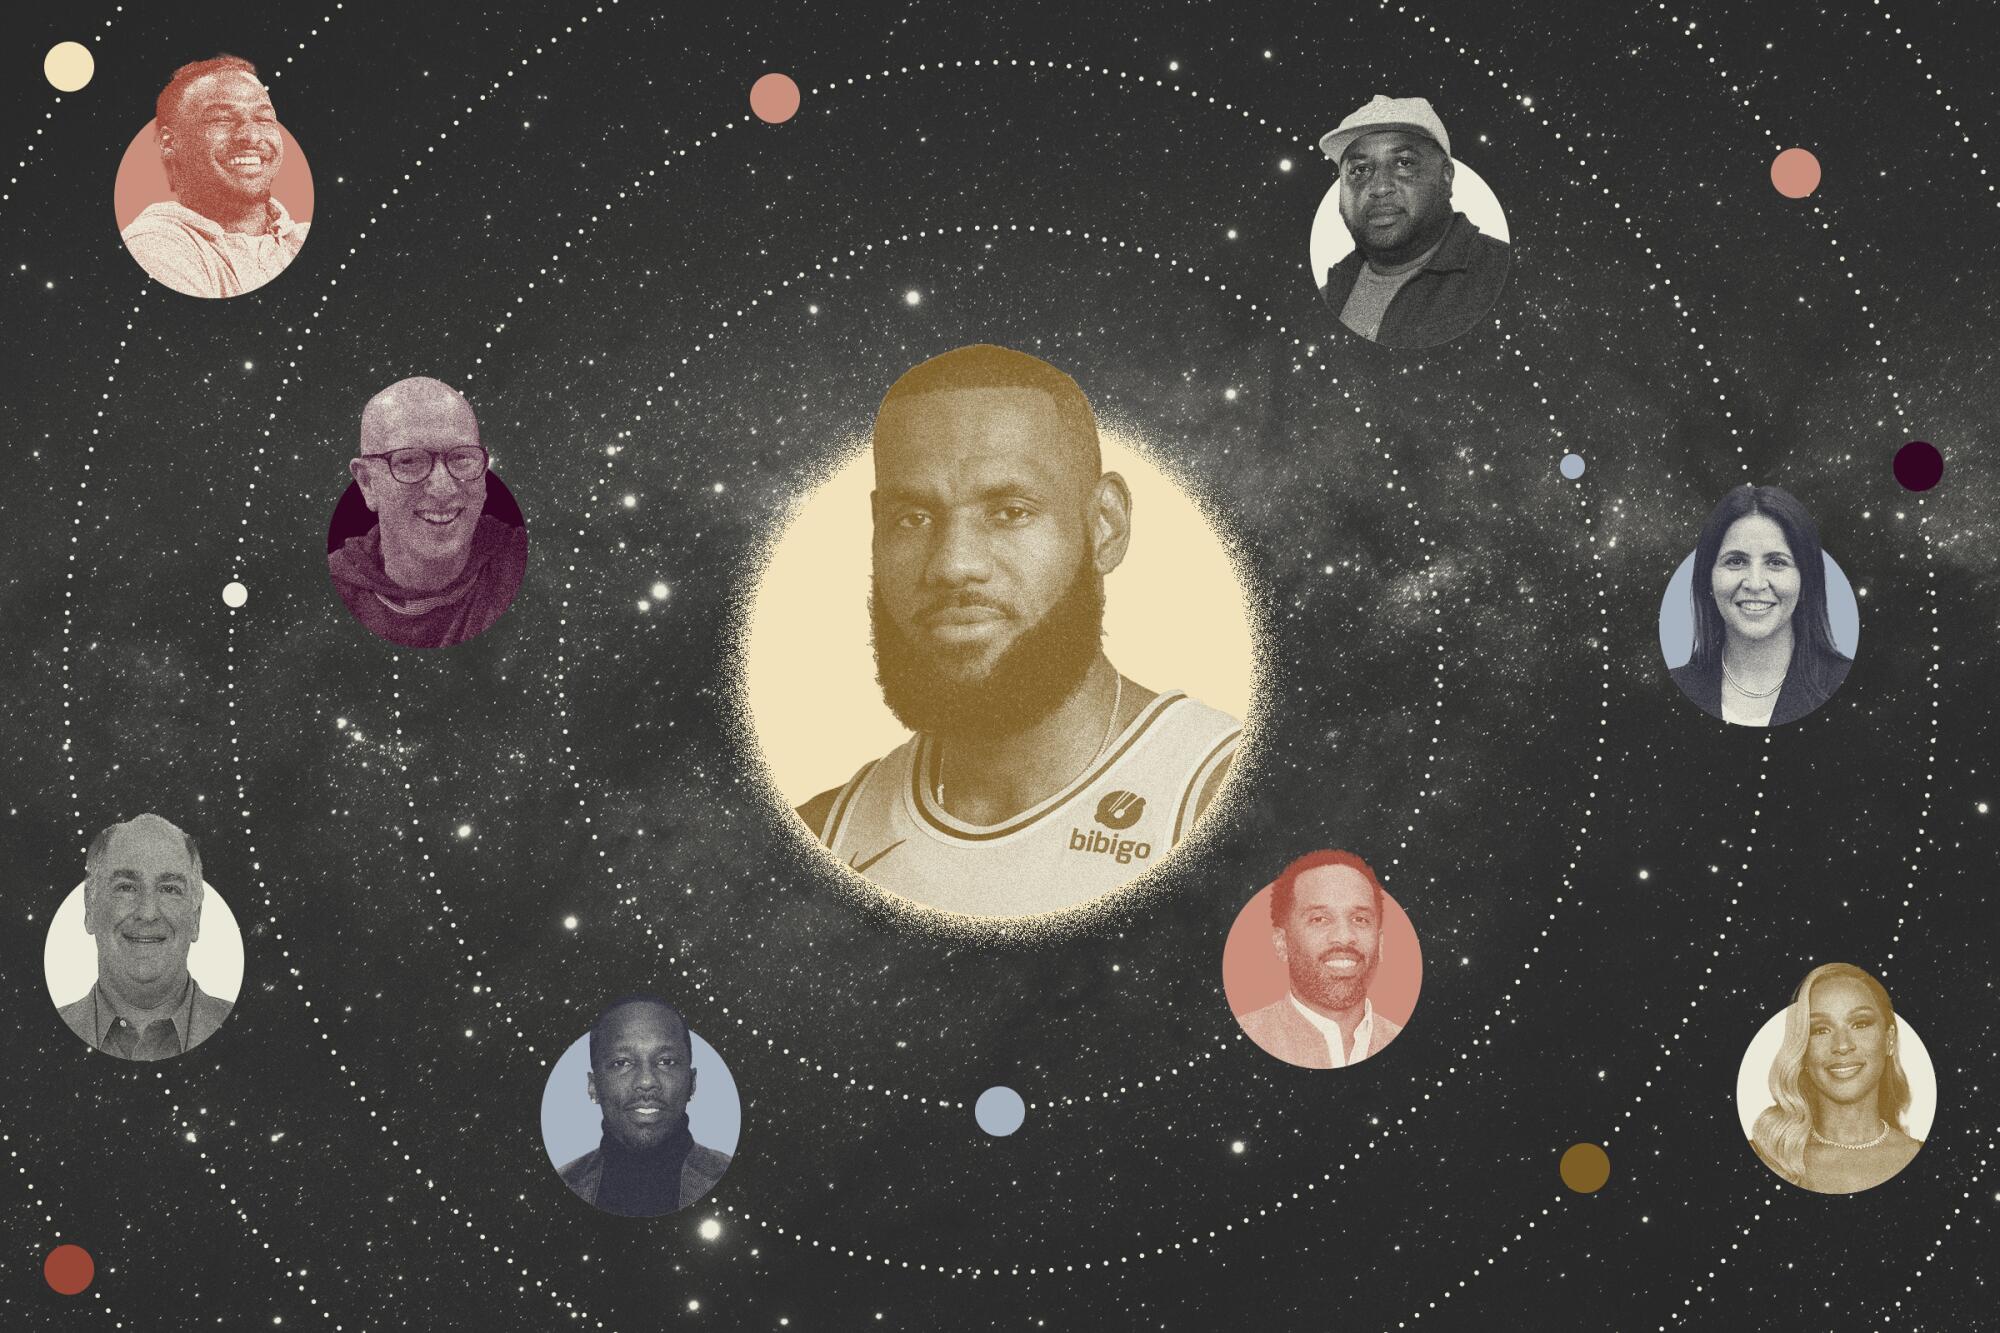 勒布朗·詹姆斯 (LeBron James) (中间) 被他的太阳系中的其他人包围